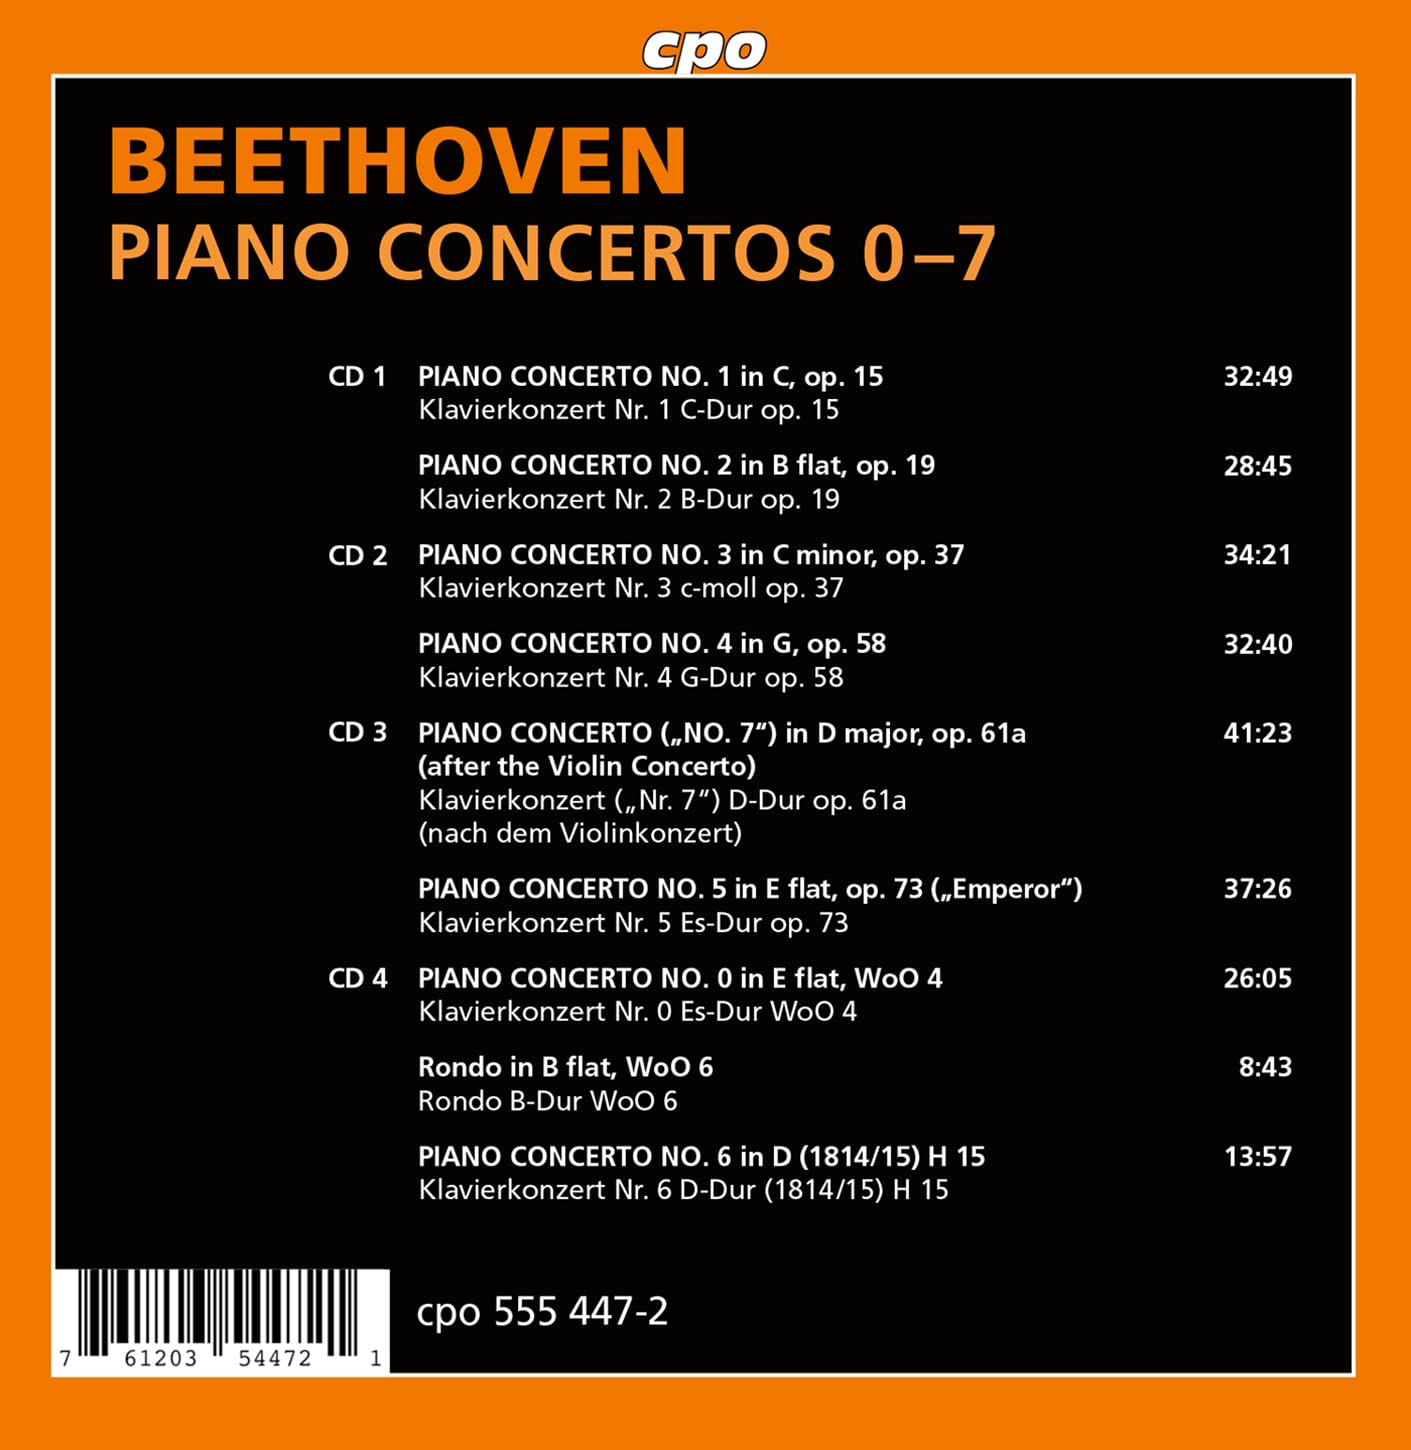 Michael Korstick 베토벤: 피아노 협주곡 0-7번 (Beethoven: Piano Concertos 0-7)